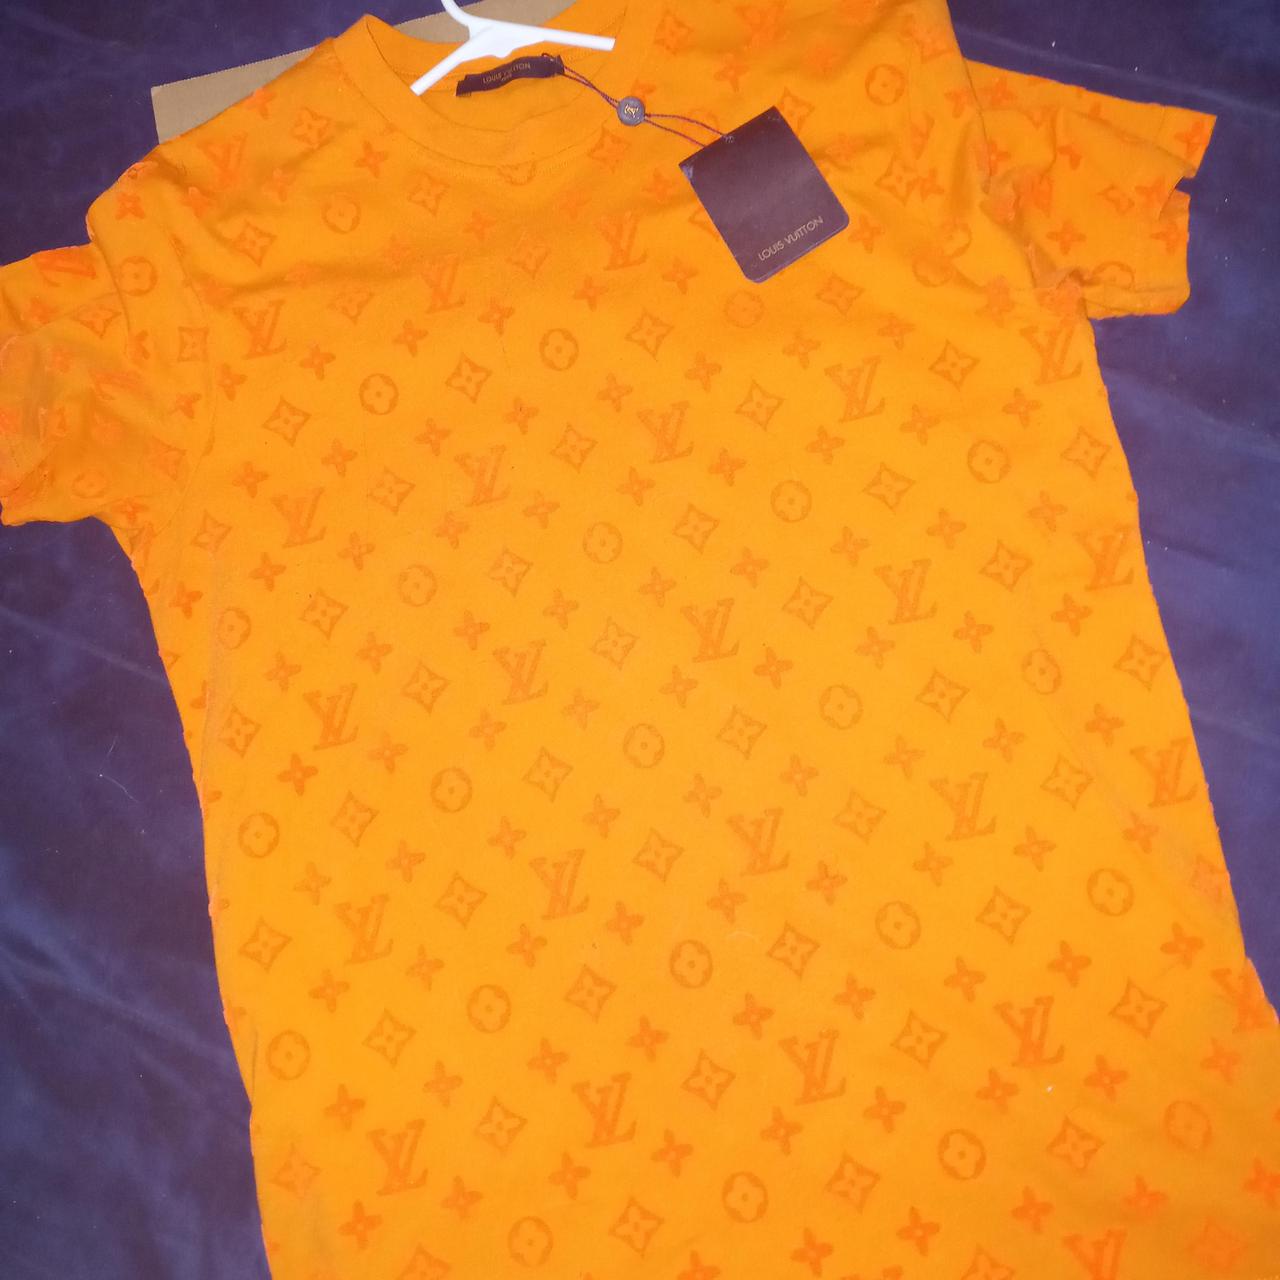 louis vuitton orange monogram t shirt